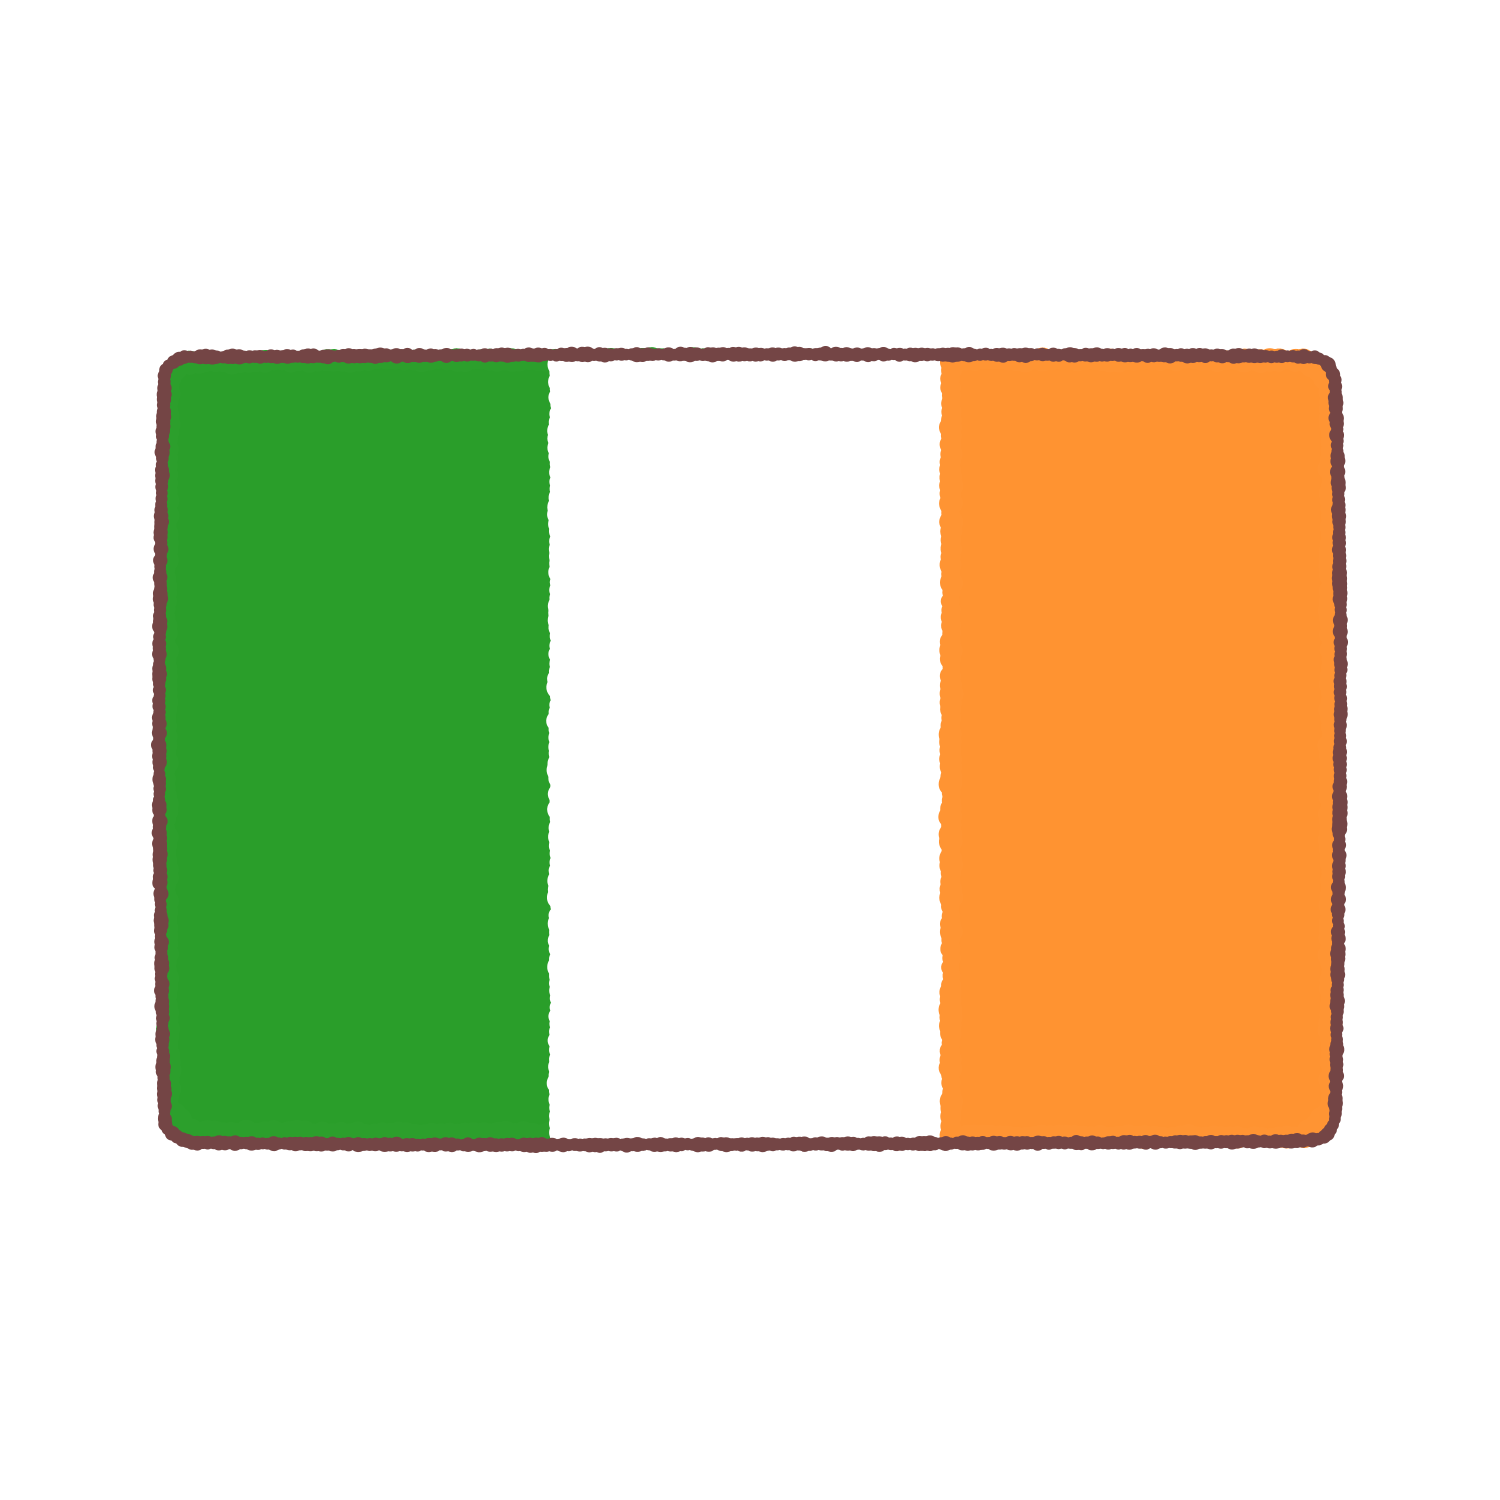 アイルランド国旗のイラスト